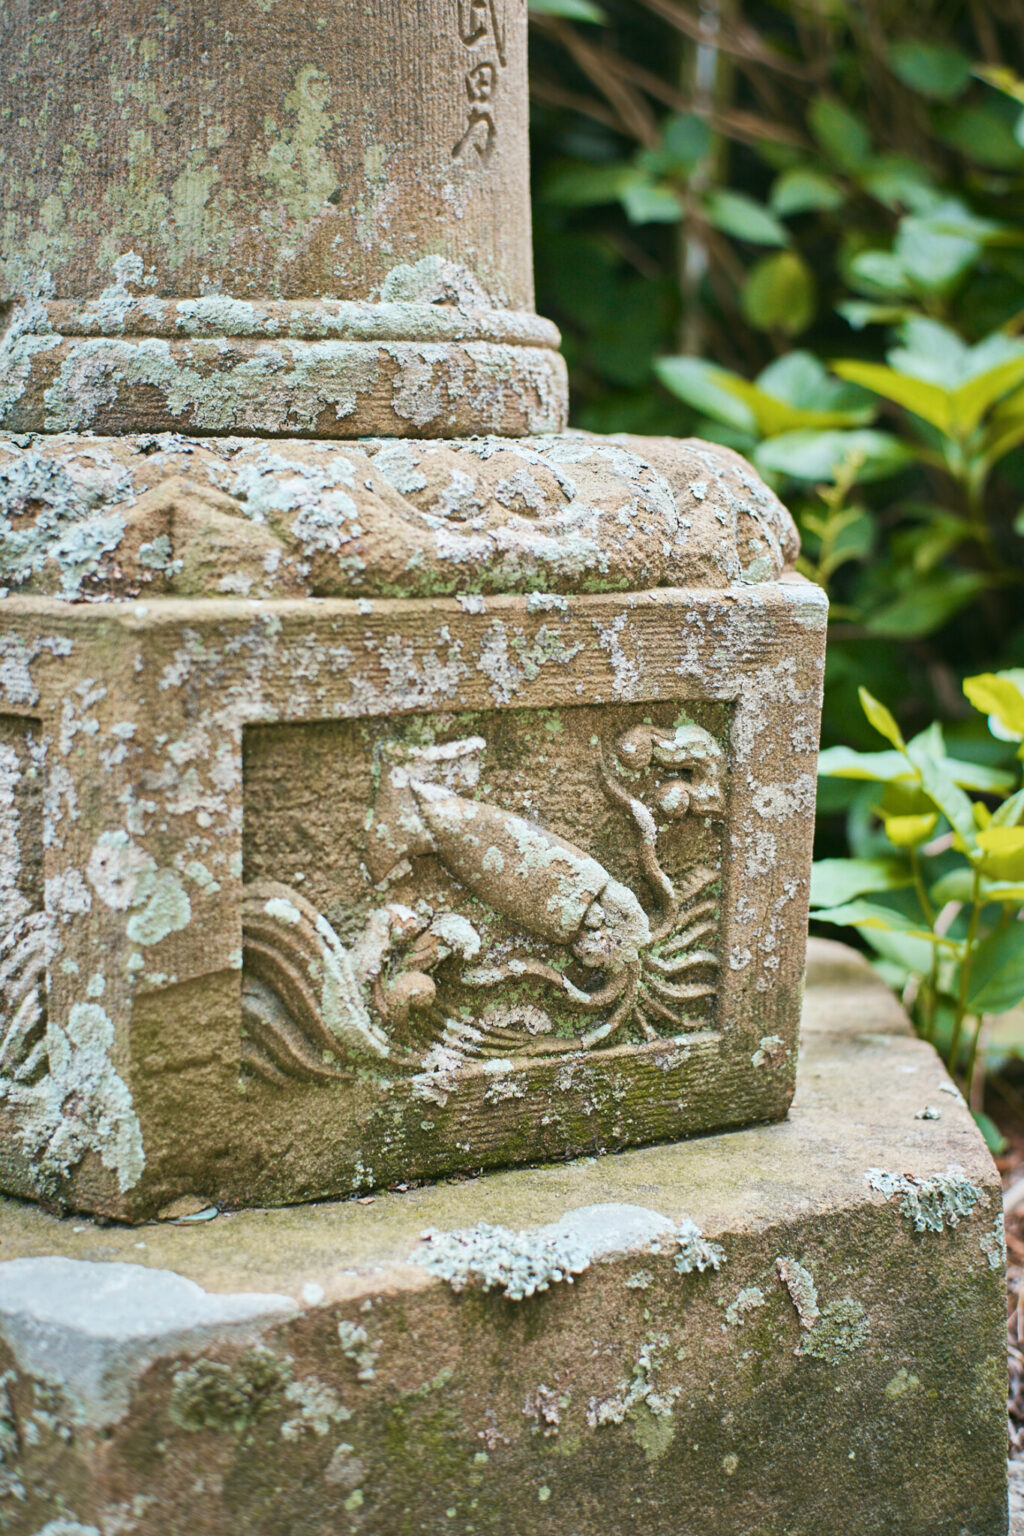 石灯籠に彫られた波に遊ぶイカ。拝殿の装飾にもイカの姿が見られる。